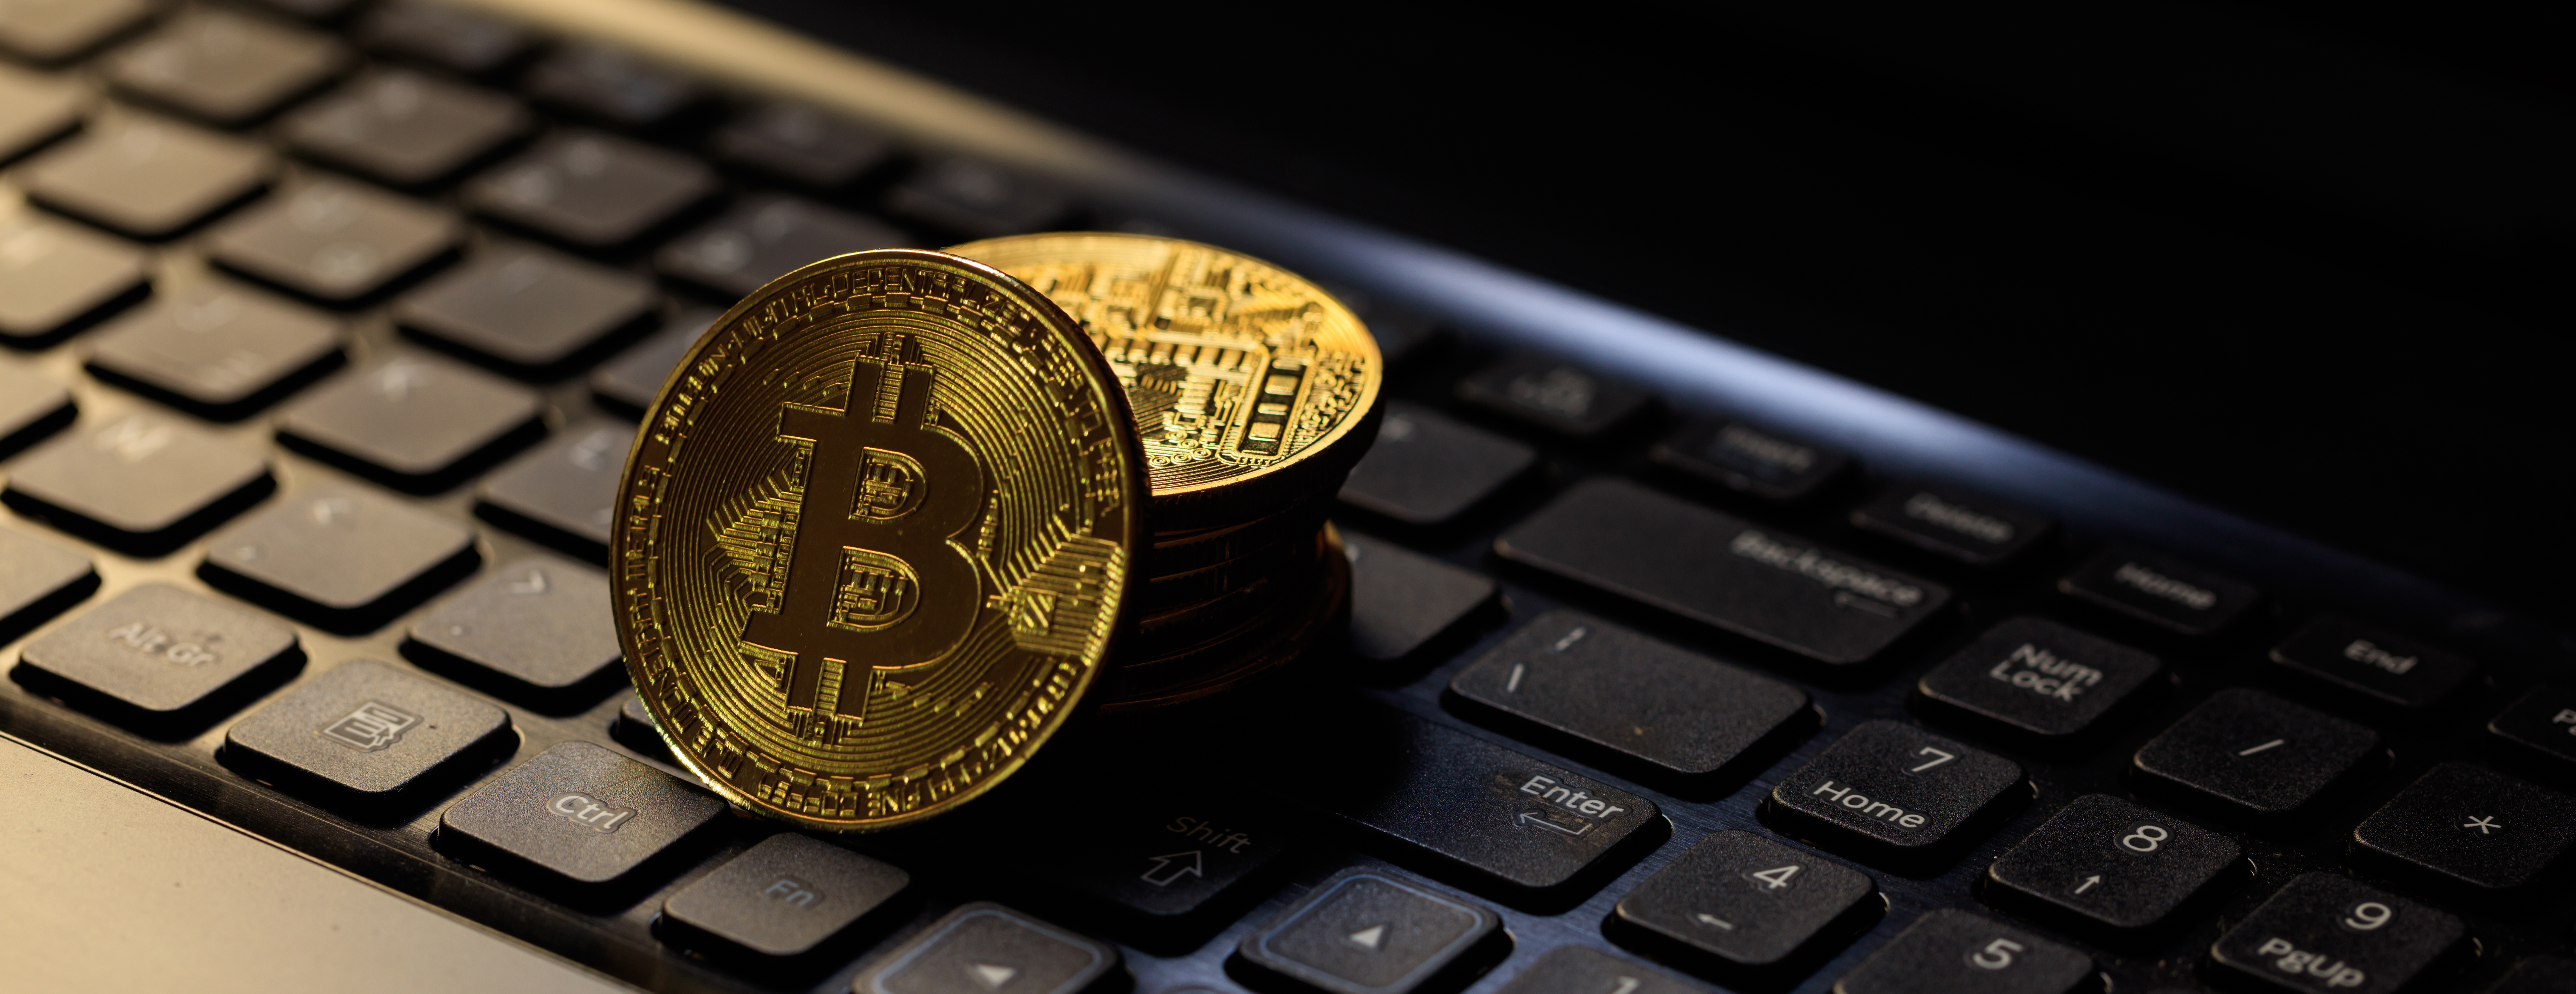 El director financiero de Visa, Vasant Prabhu, afirma que el bitcoin es una “burbuja” favorecida por los delincuentes.